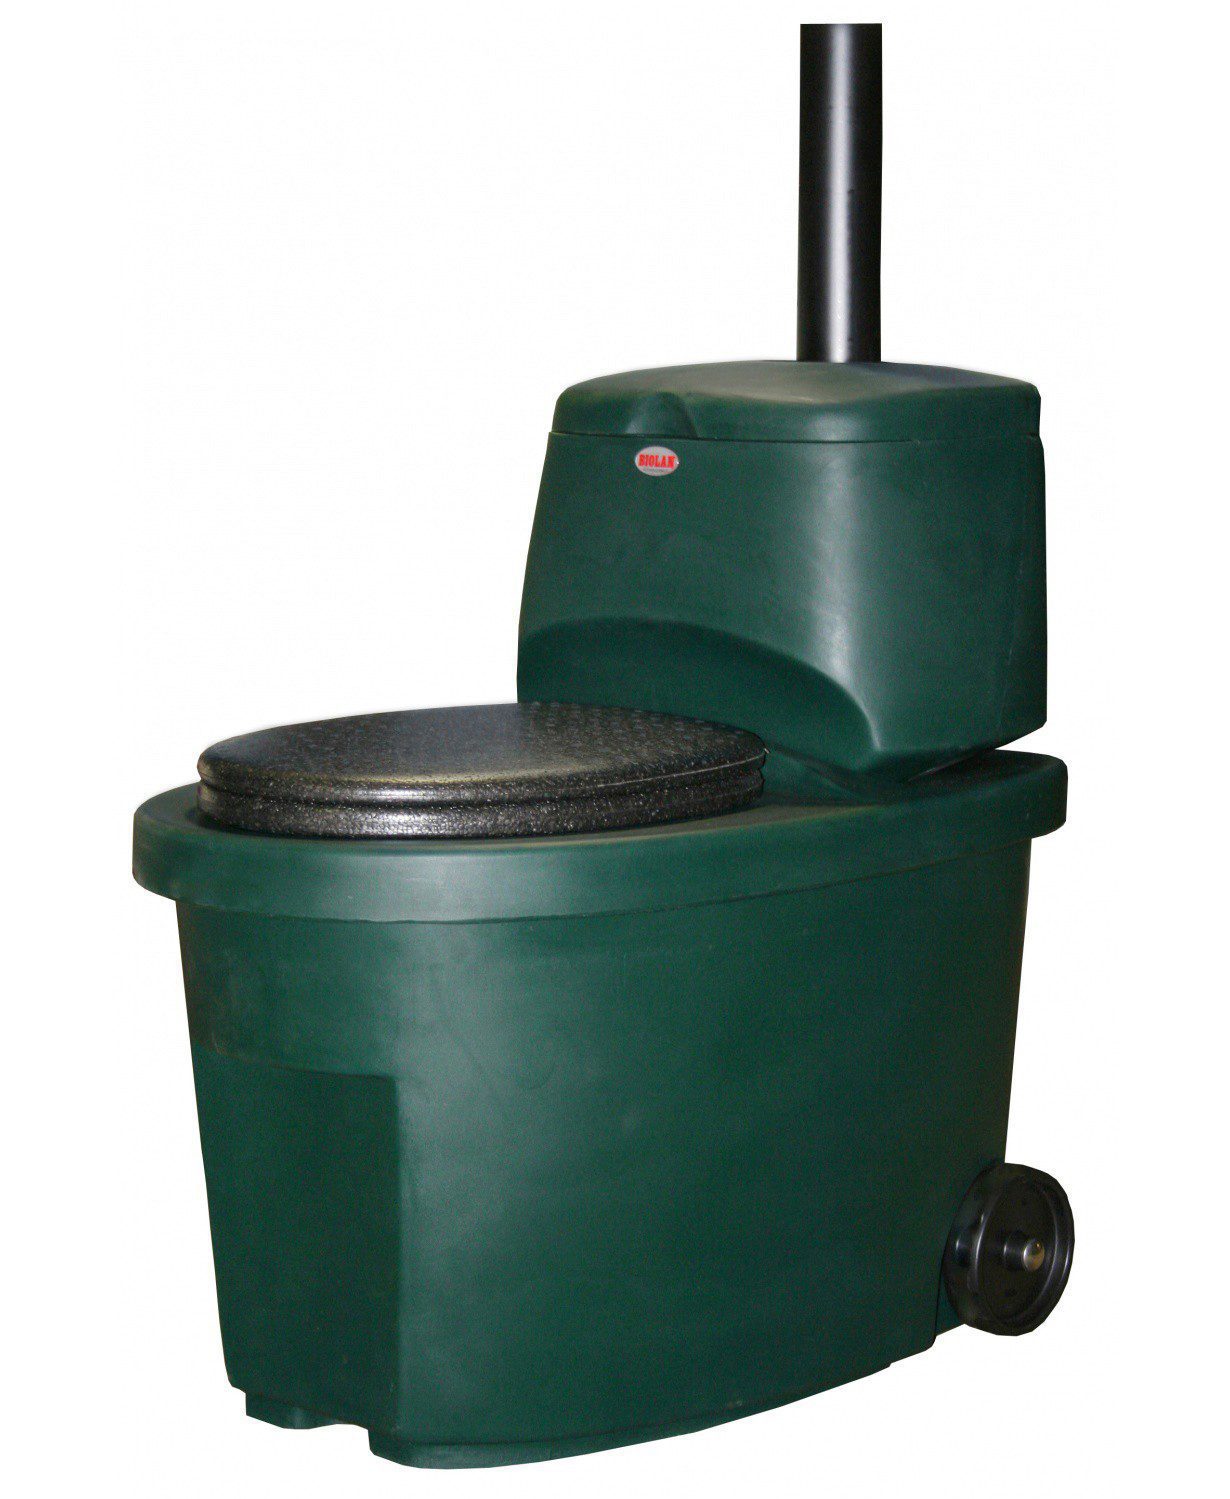 Сухой туалет Biolan / Биолан - Зеленый